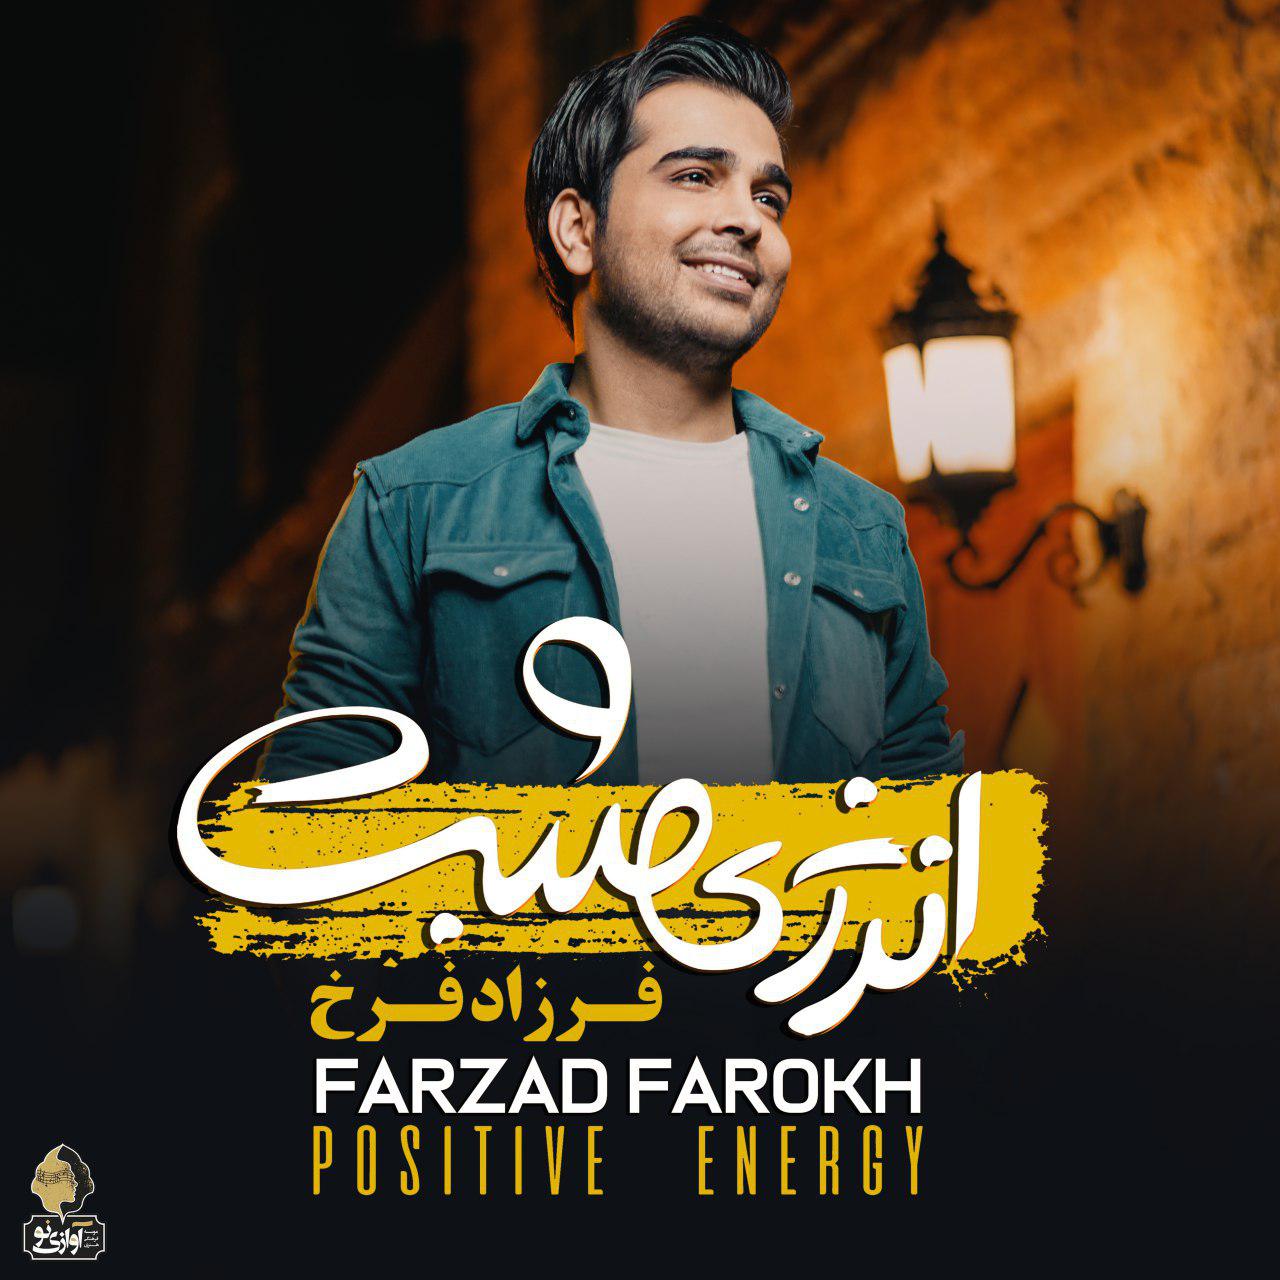  دانلود آهنگ جدید فرزاد فرخ - دیونه برگرد | Download New Music By Farzad Farokh - Divoneh Bargard